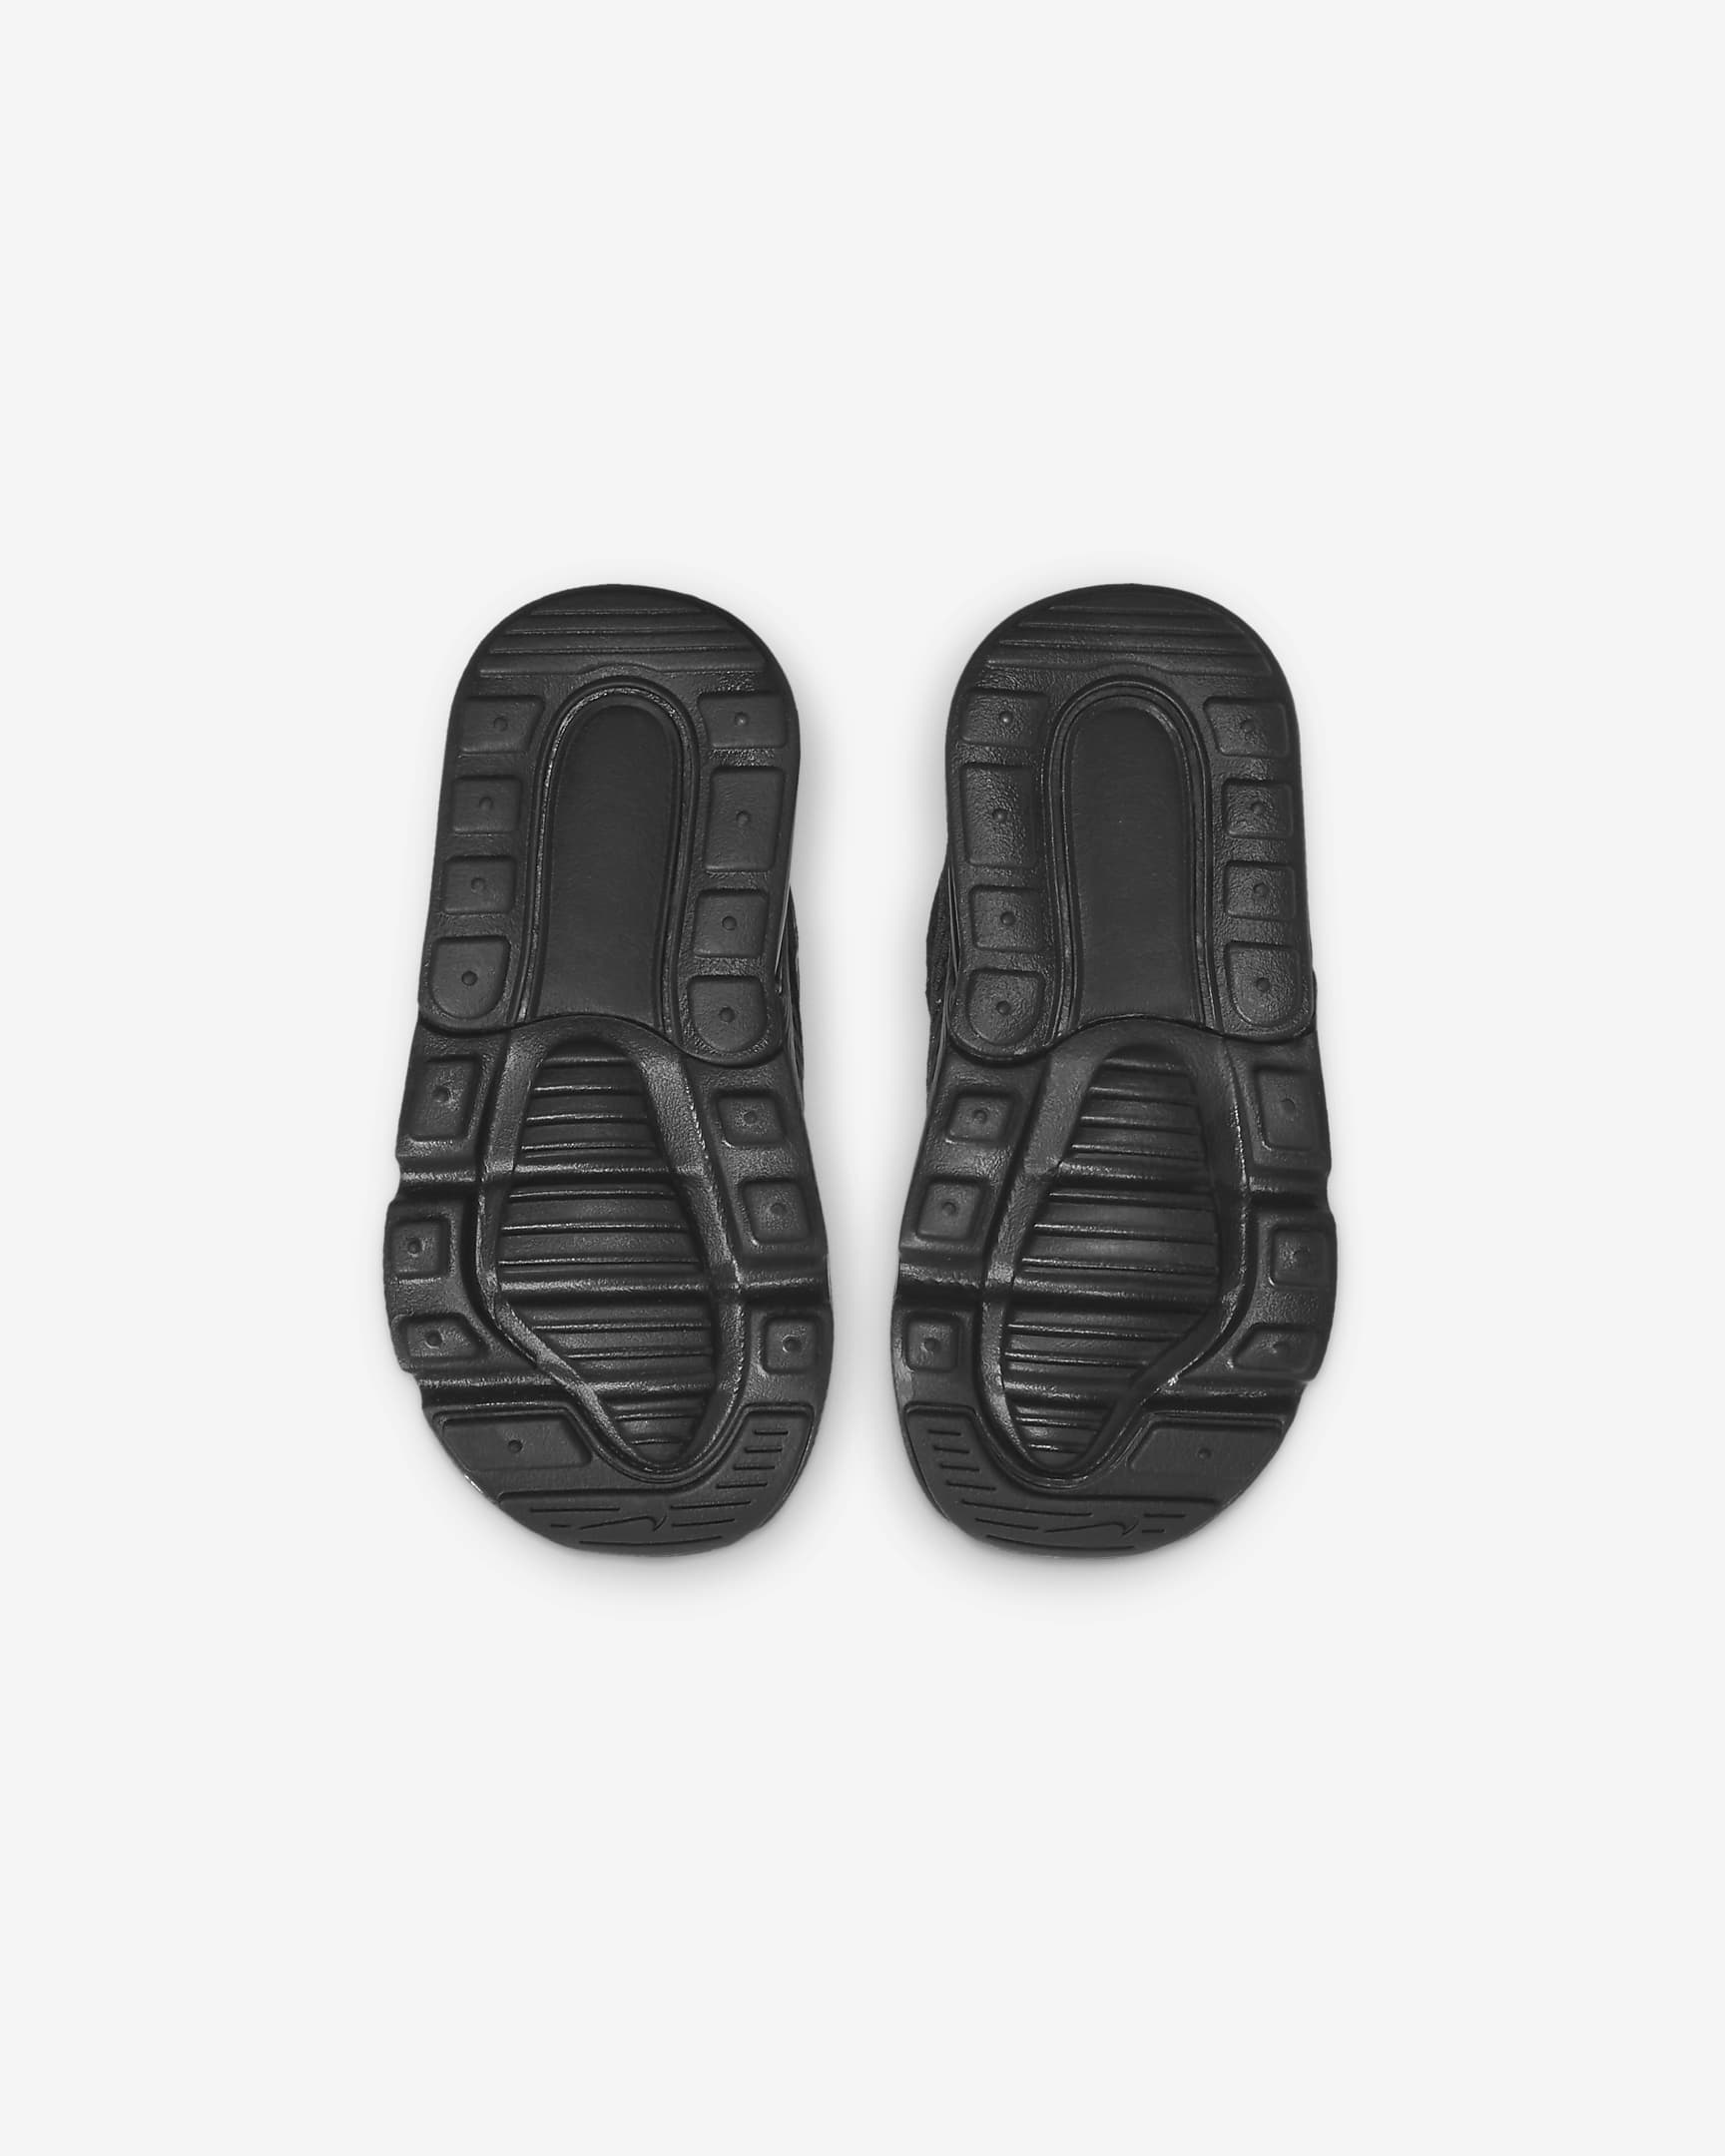 Nike Air Max 270 Baby/Toddler Shoe - Black/Black